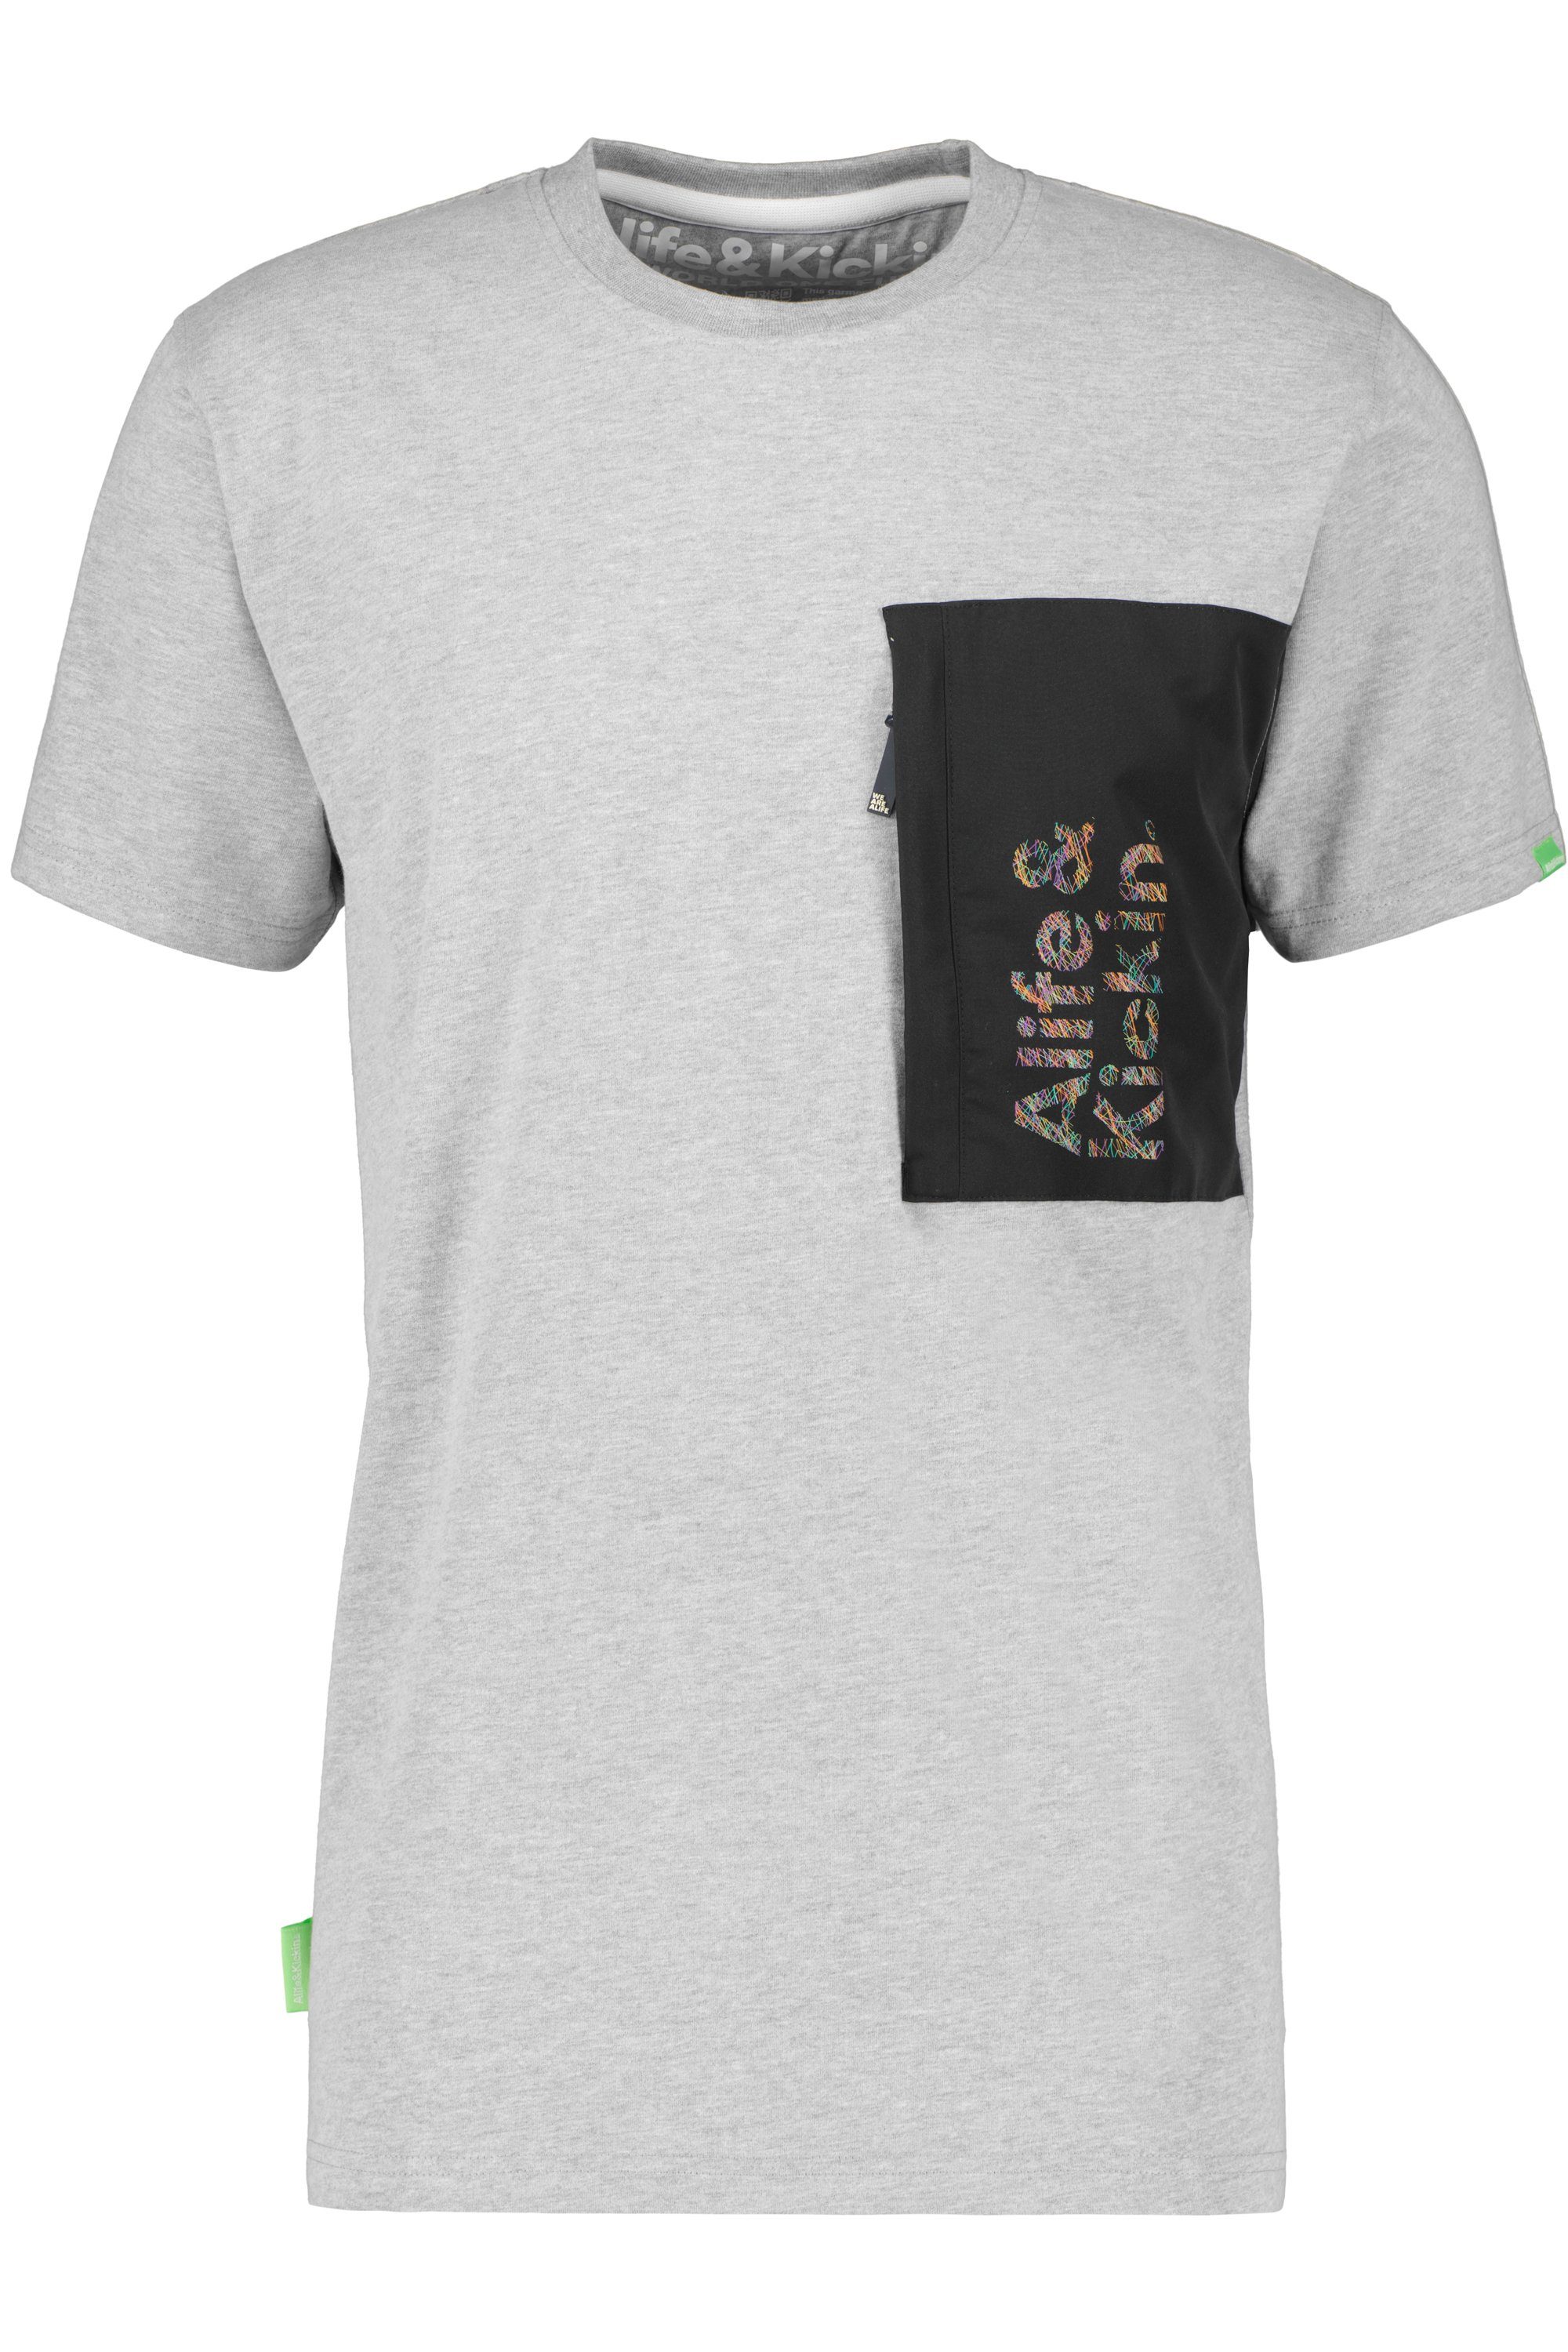 Alife & Kickin T-Shirt Herren T-Shirt Shirt RossAK steal